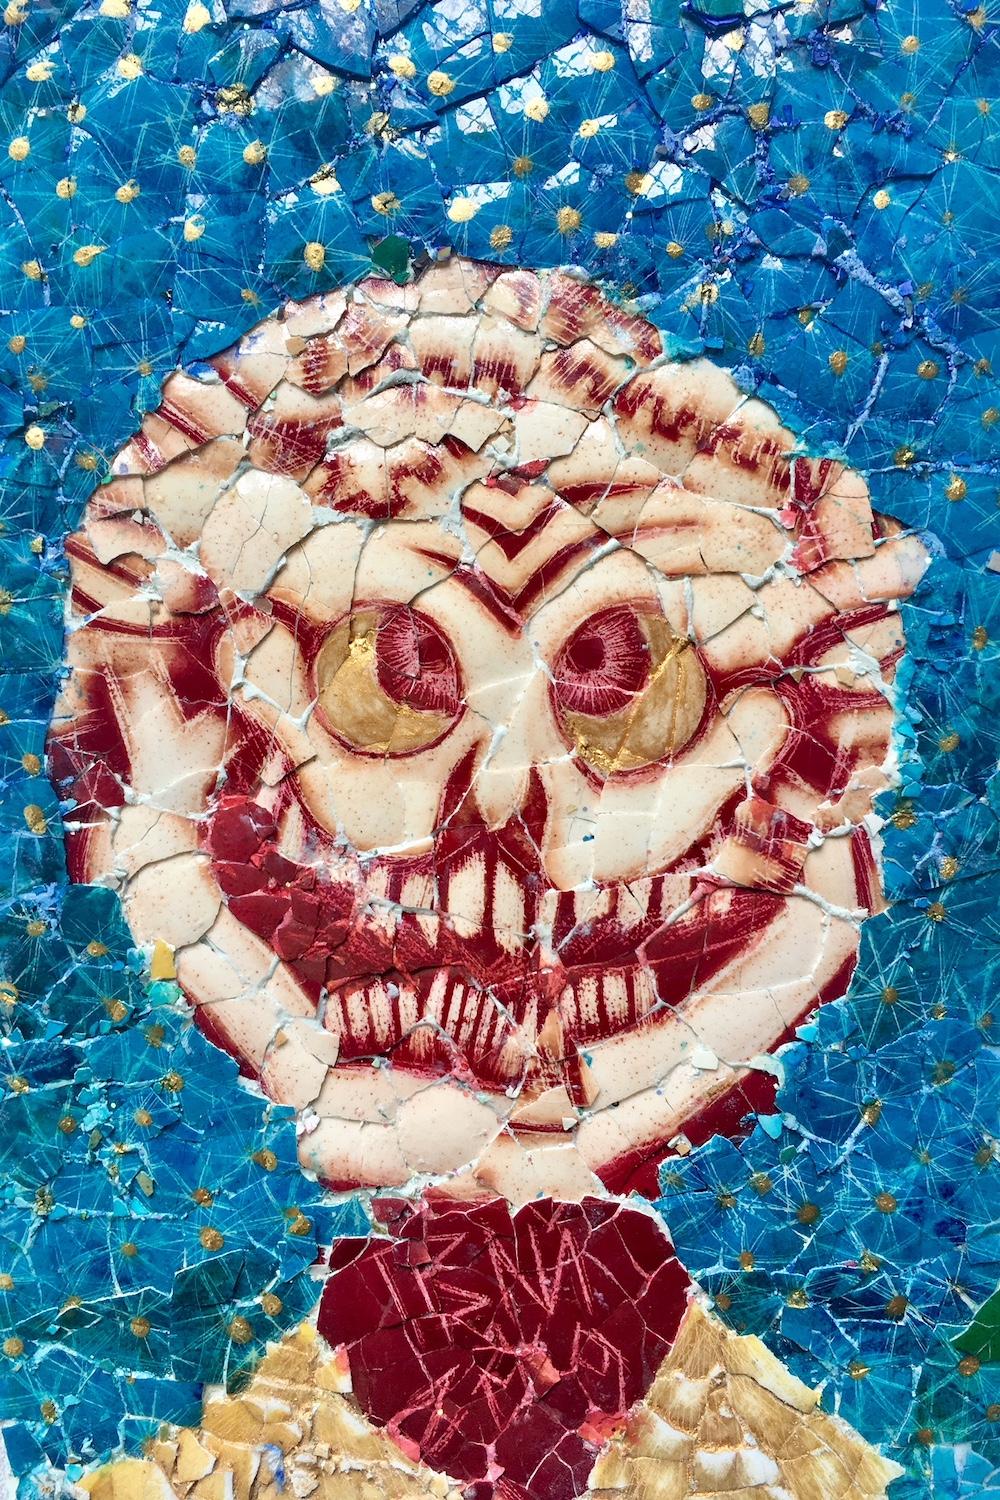 Collage aus Eierschalen: 'Skully 3' – Mixed Media Art von Paul Wirhun